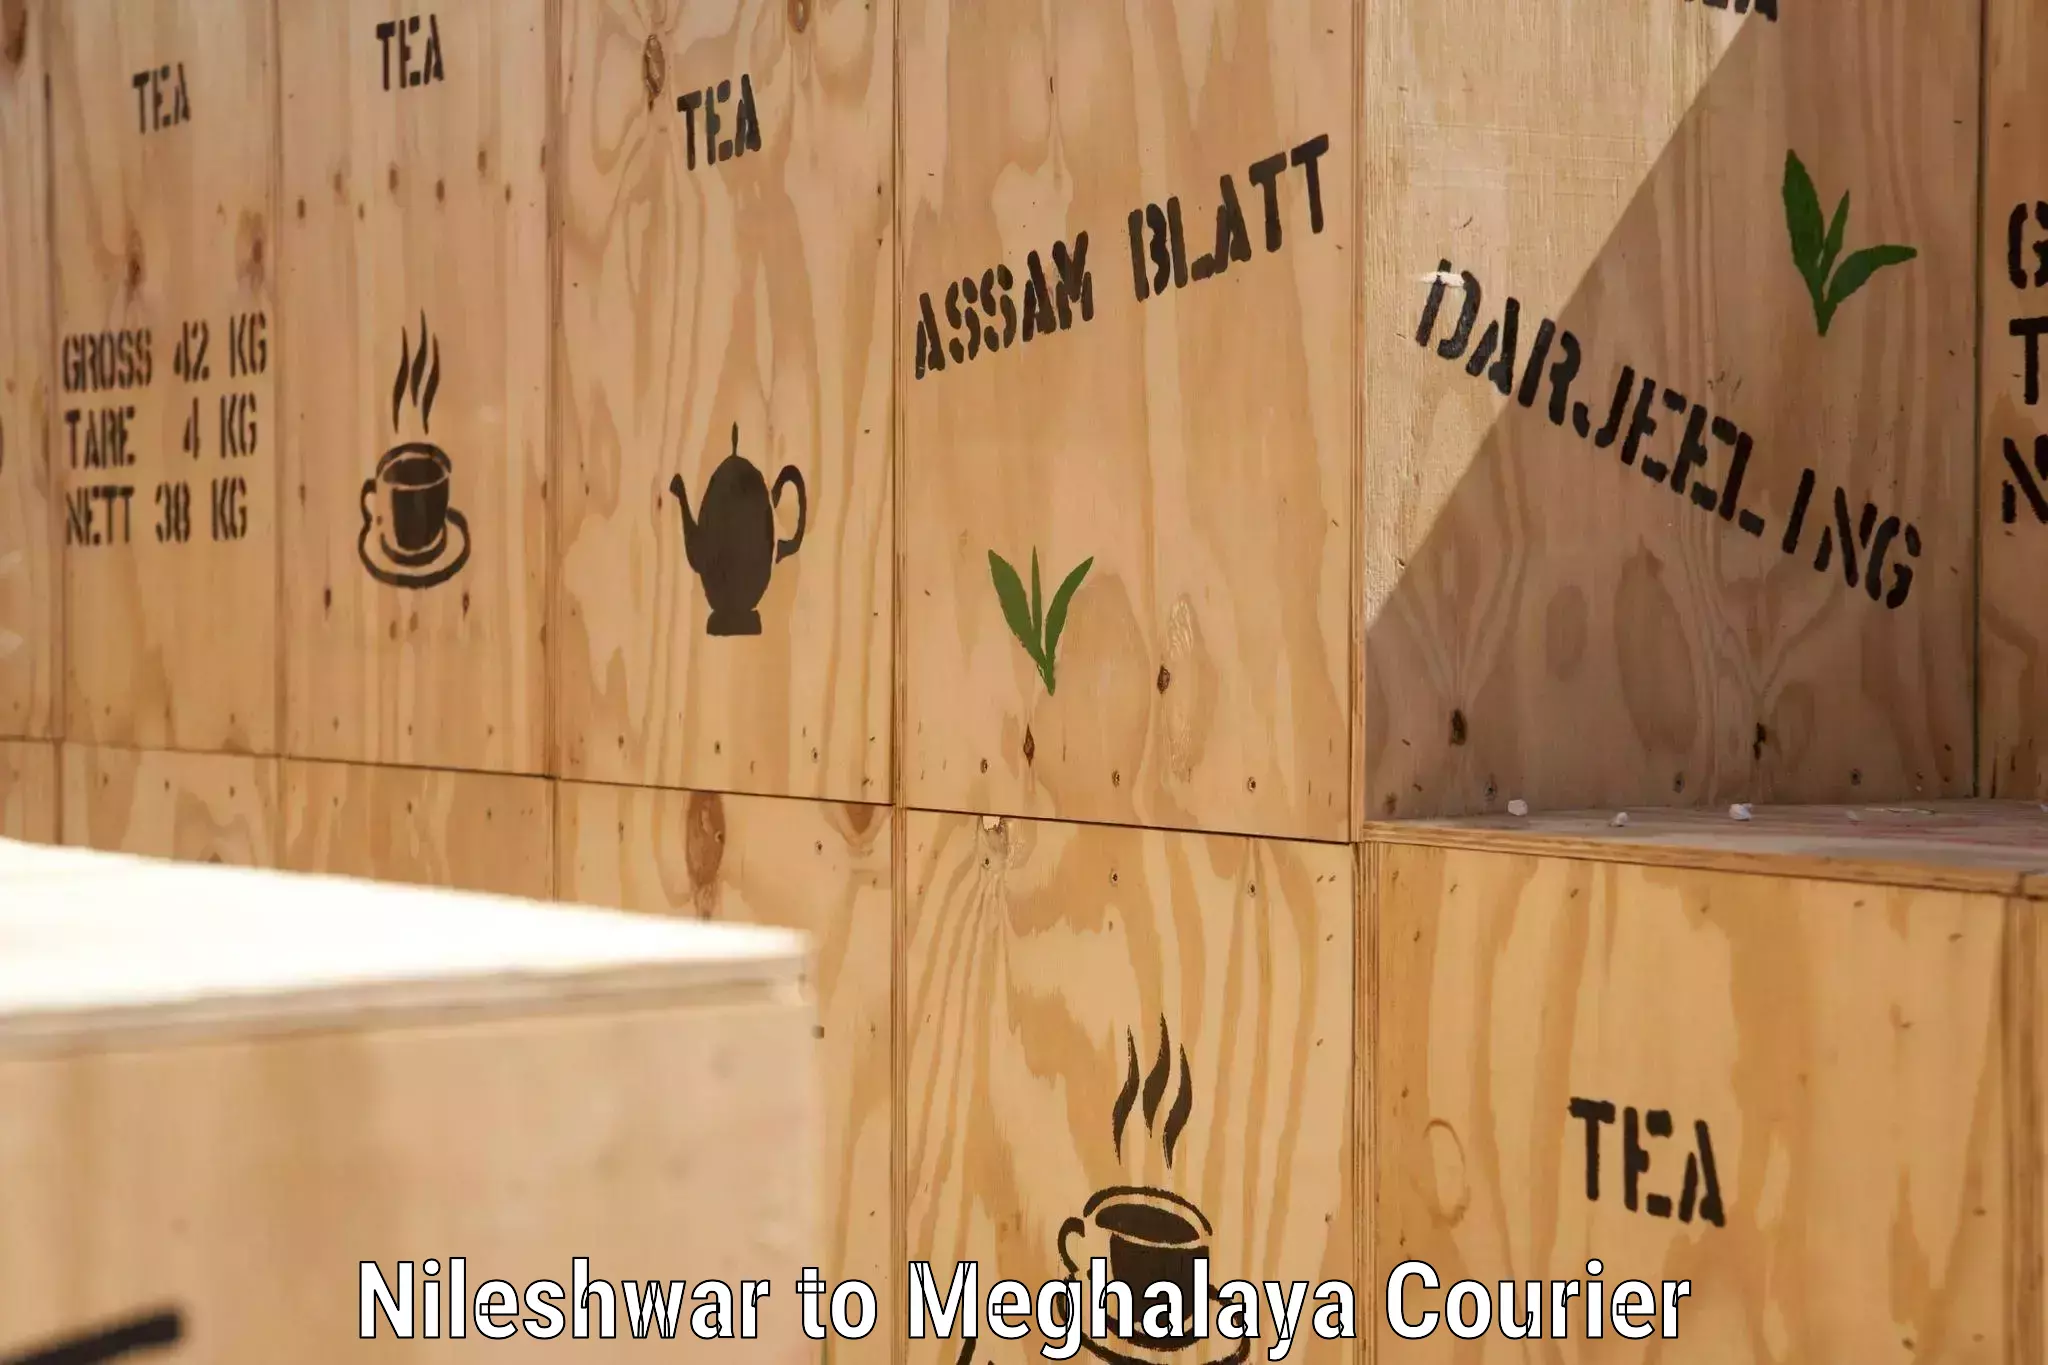 Reliable shipping partners Nileshwar to NIT Meghalaya